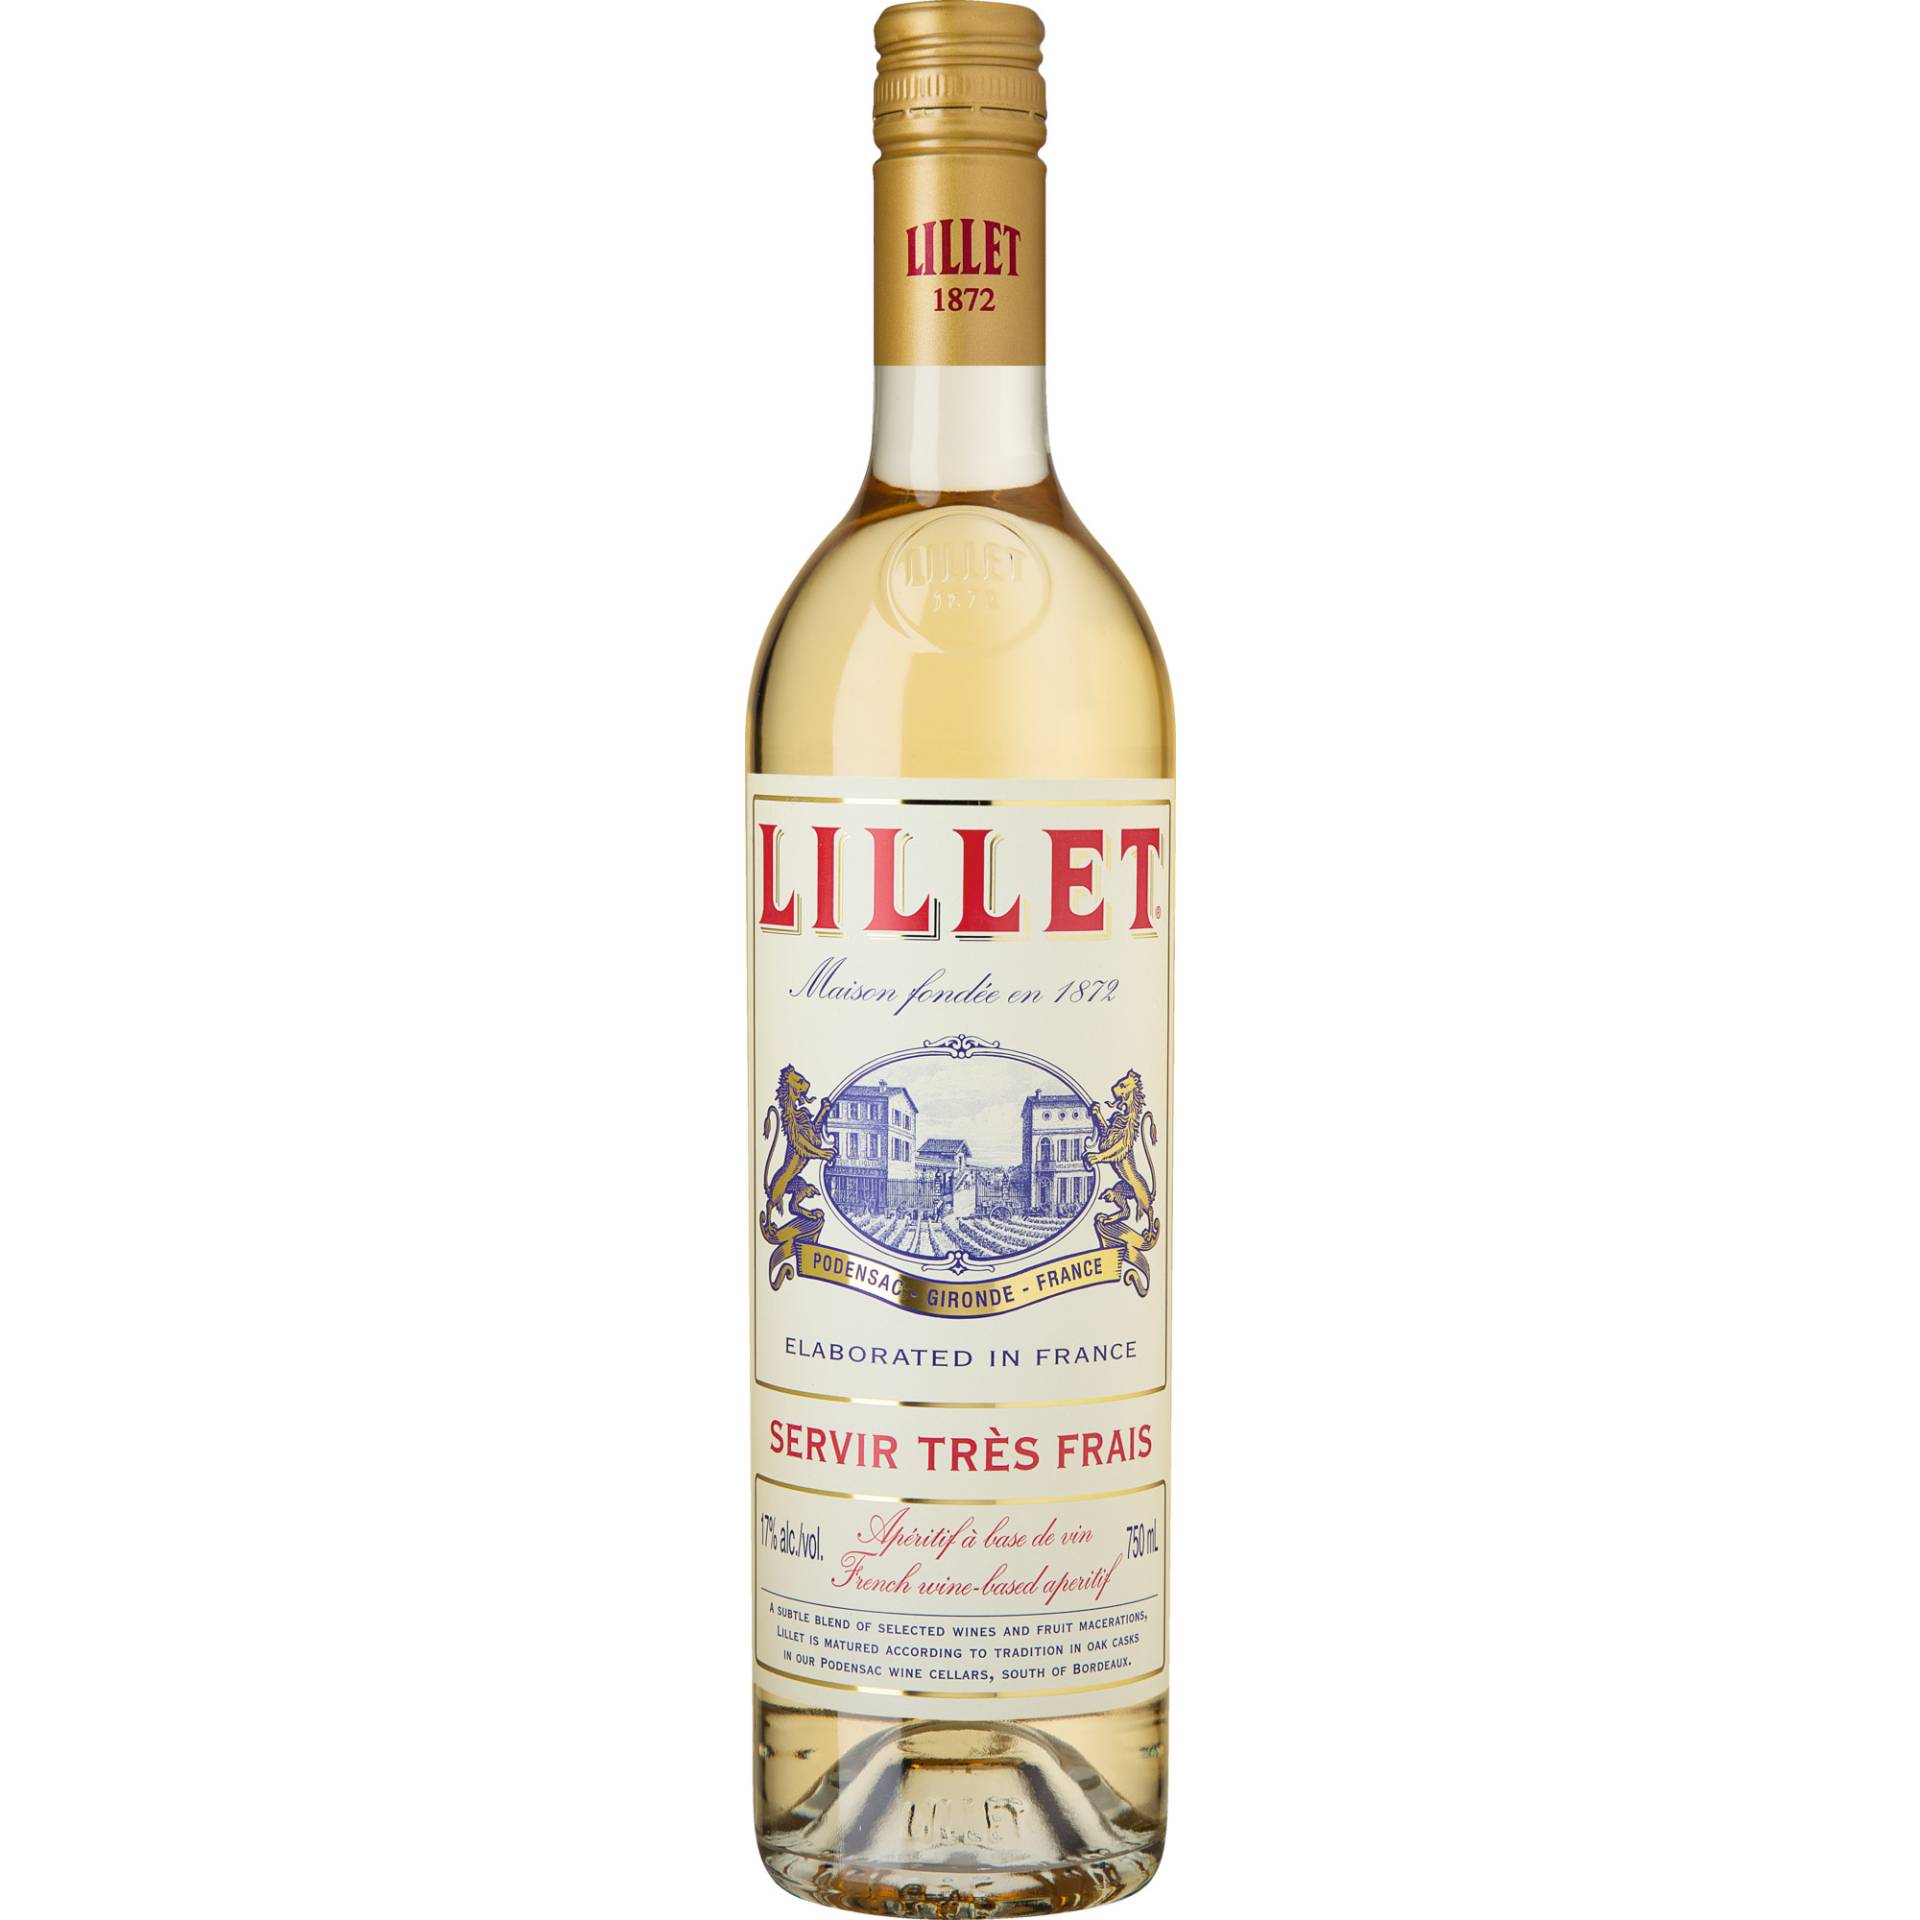 Lillet Blanc, Apéritif à base de vin, 17%, Spirituosen von Lillet Frères, BP2, 33720 Podensac, France